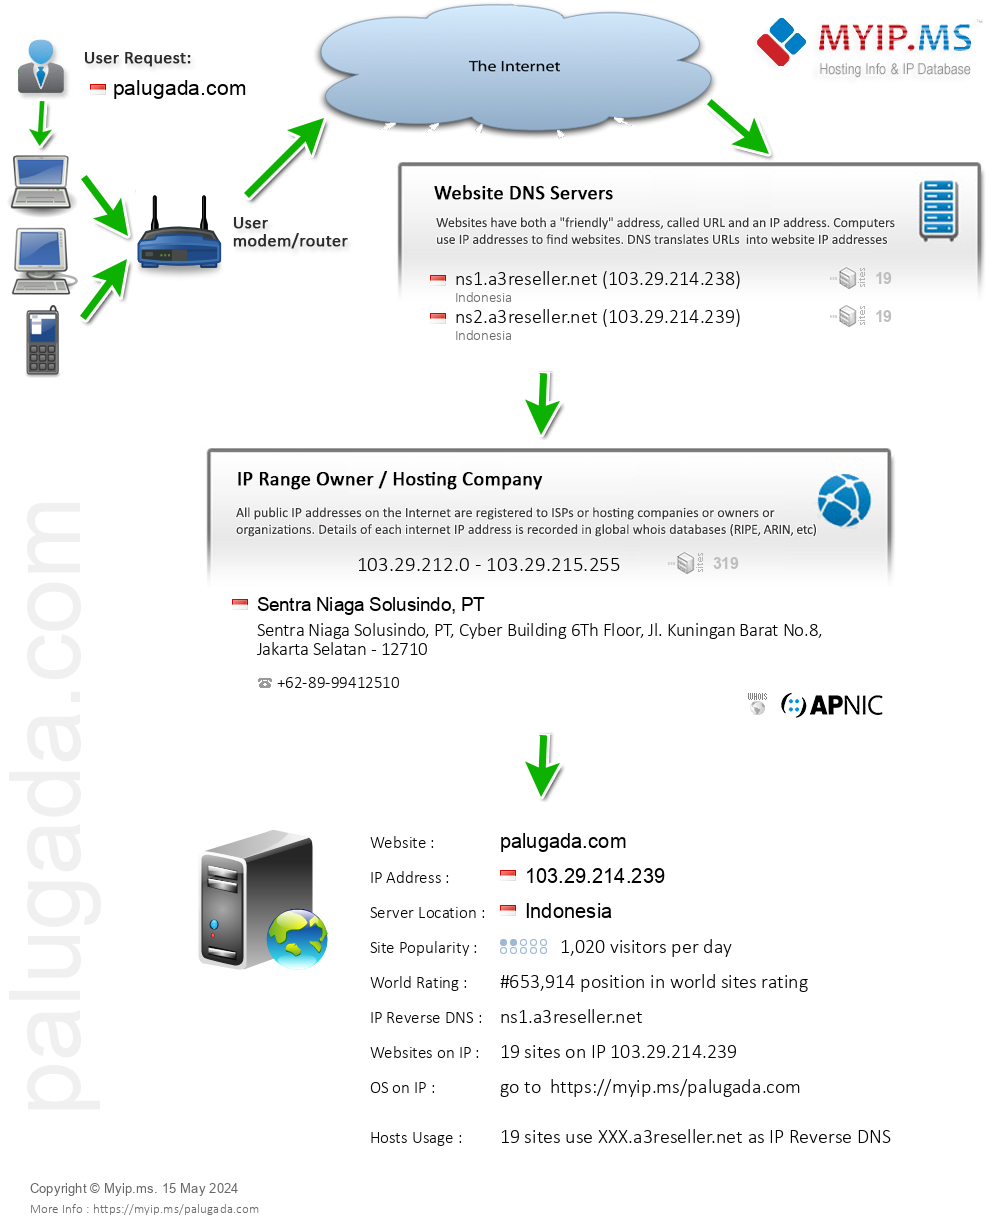 Palugada.com - Website Hosting Visual IP Diagram